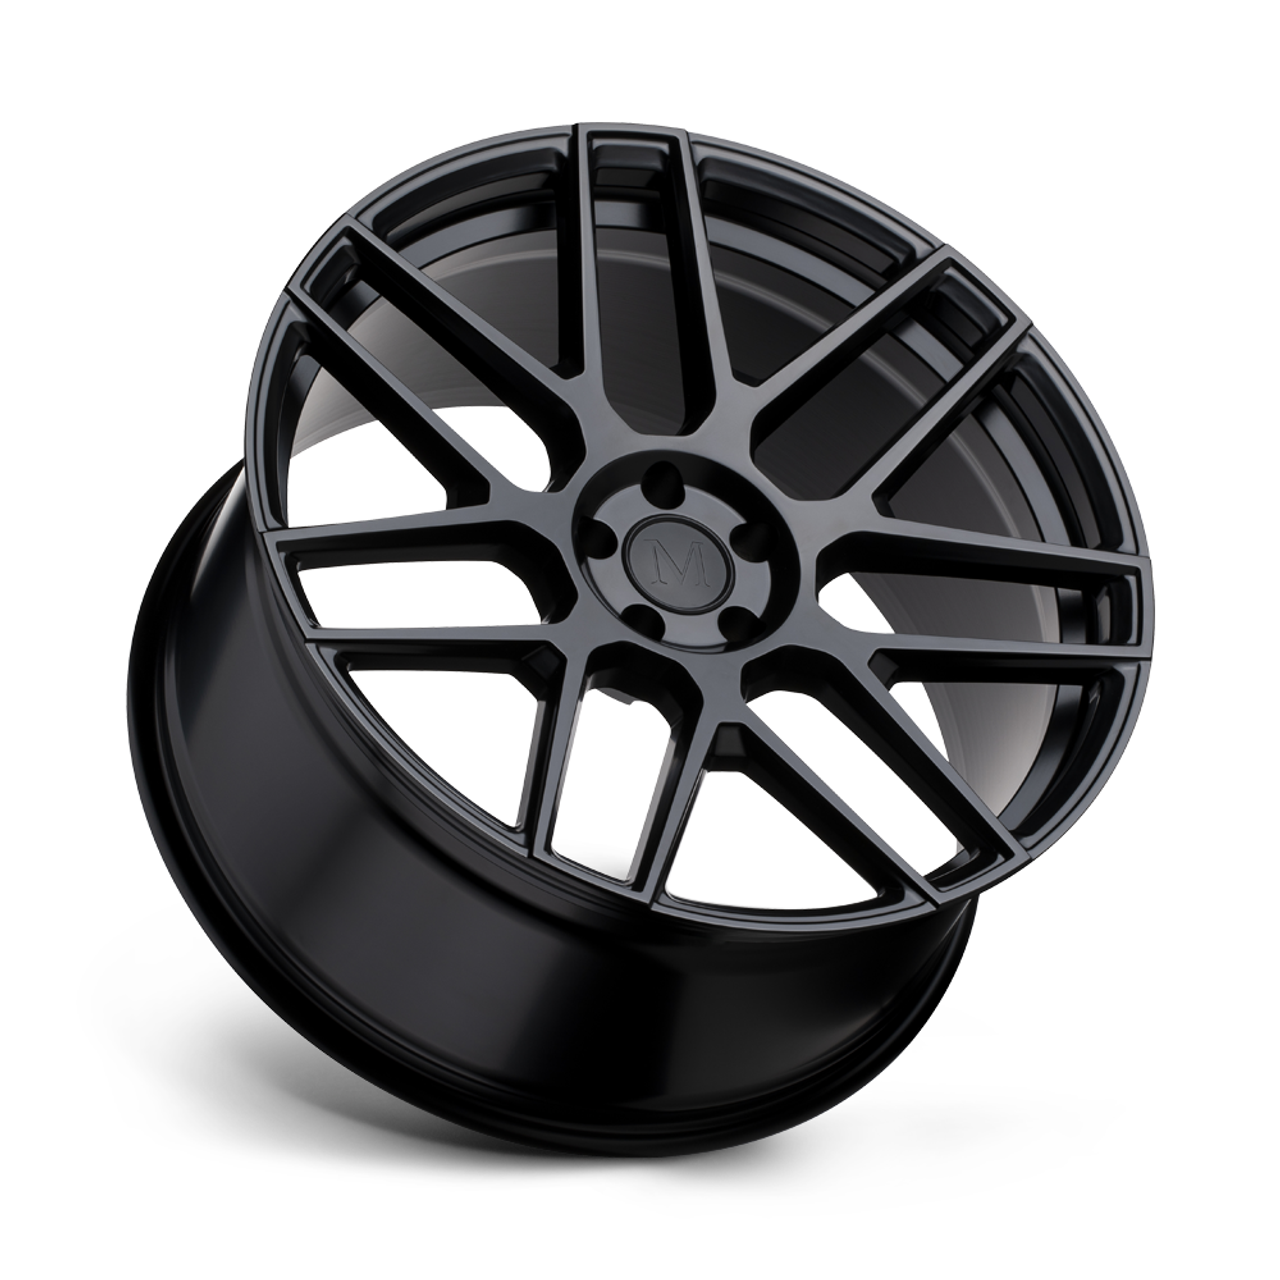 Mandrus Miglia 19x9.5 5x112 Semi Gloss Black Rf Wheel 19" 38mm Rim